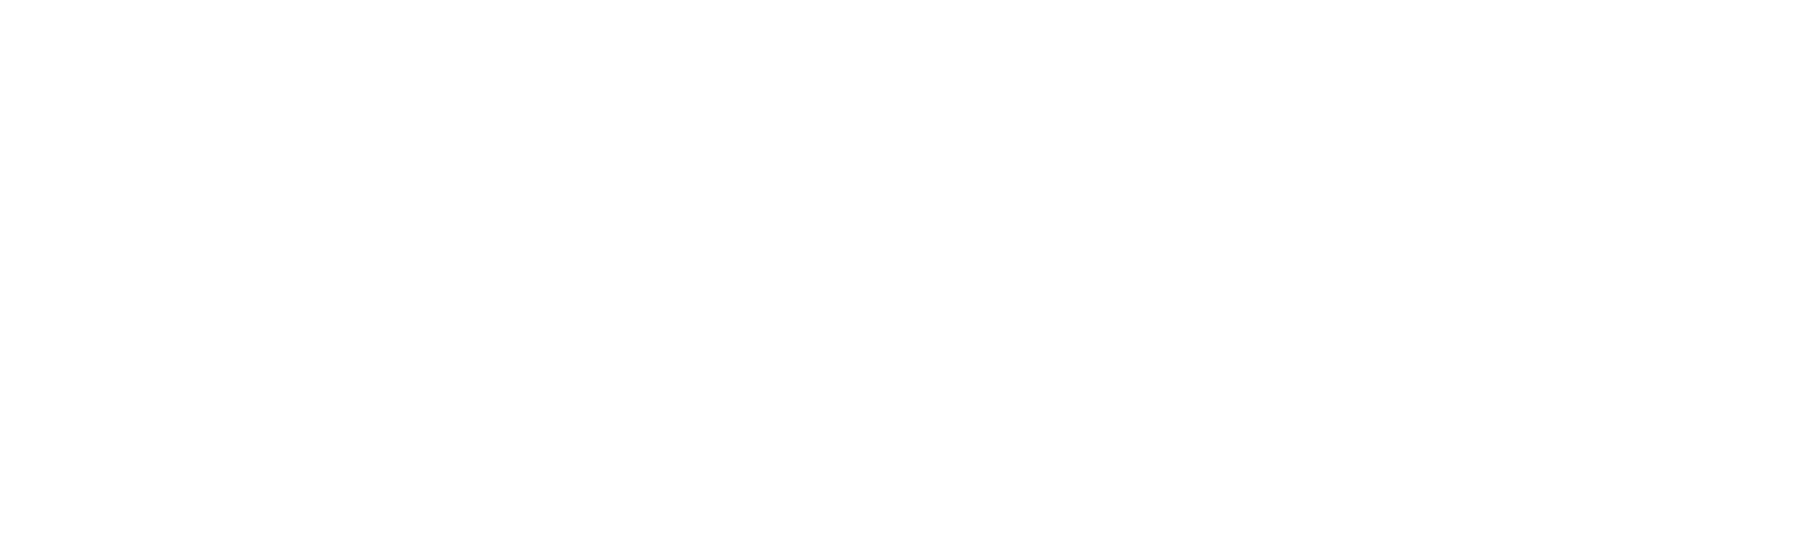 Barn Cat Renovations Logo